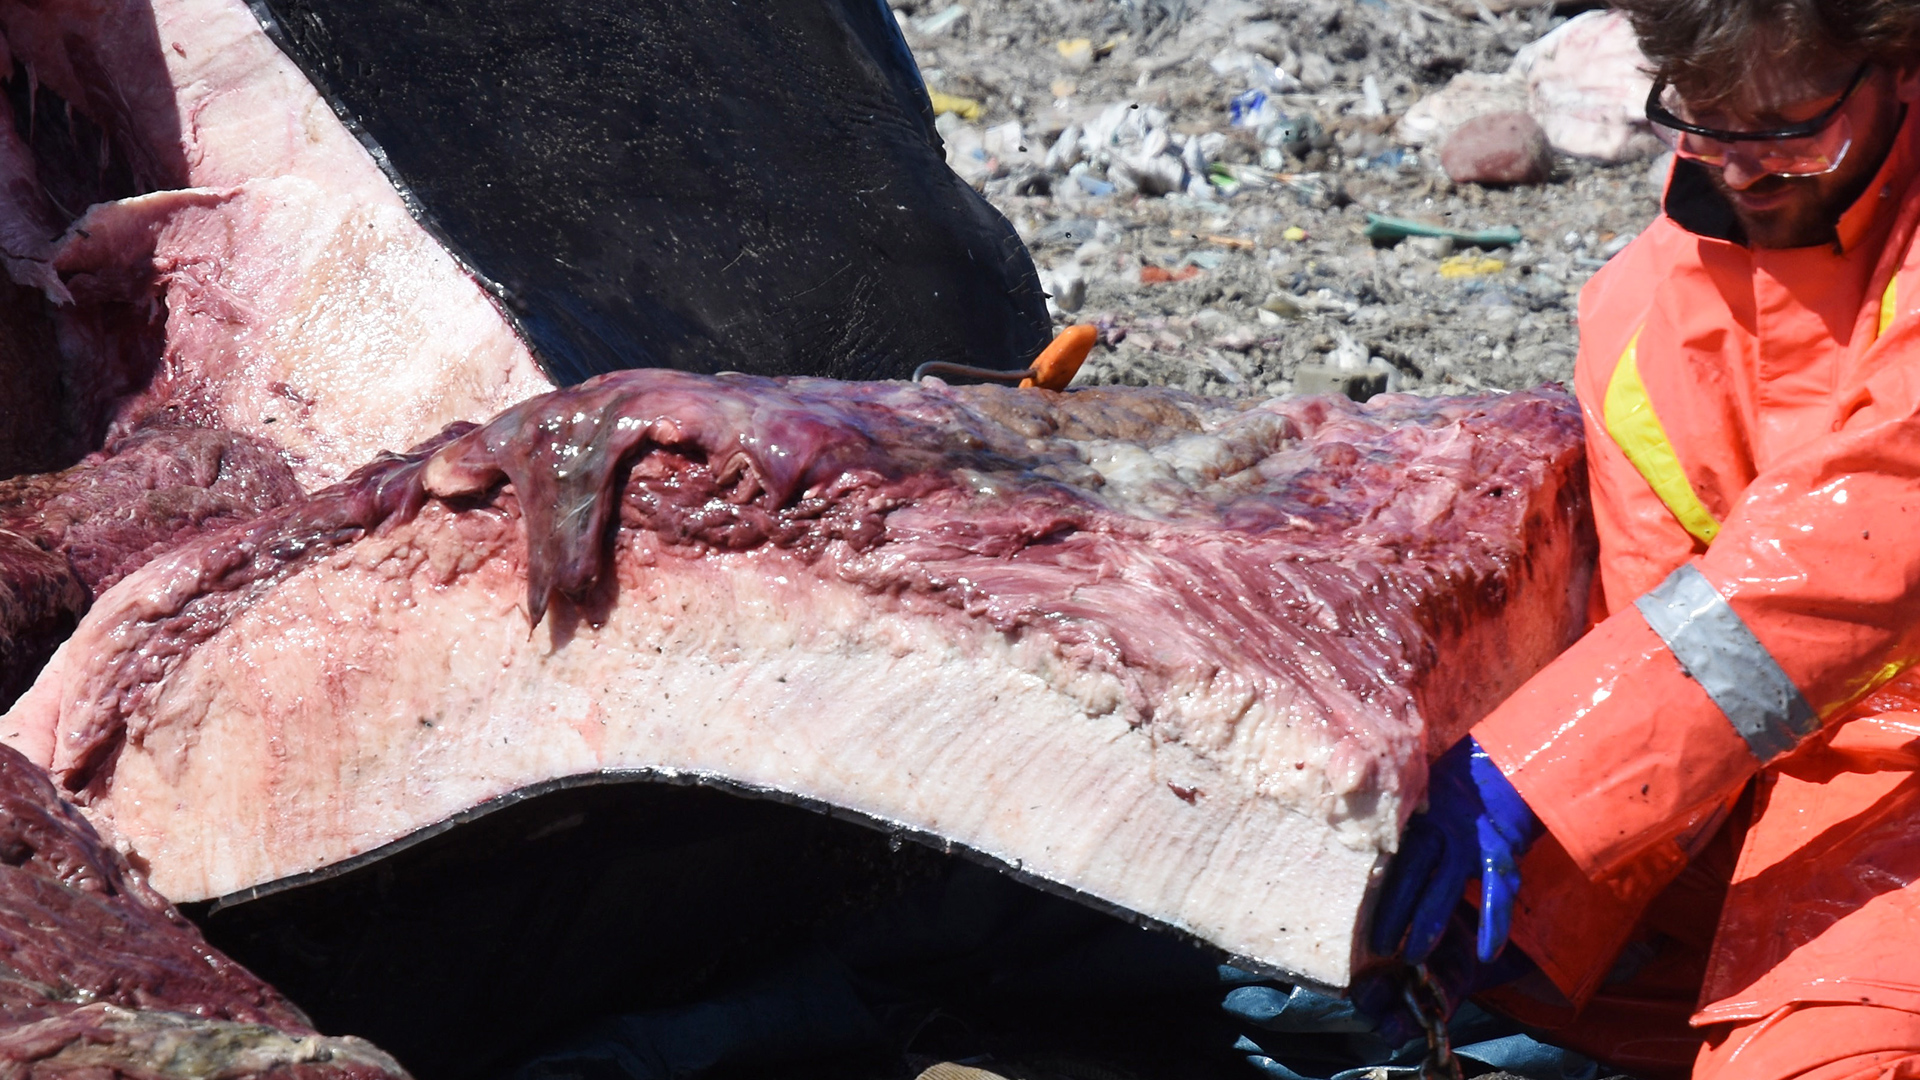 Découpe de peau d’une carcasse de baleine noire avec son épaisse couche de gras. Un homme à côté montre que celle-ci est plus épaisse que la longueur de sa main.